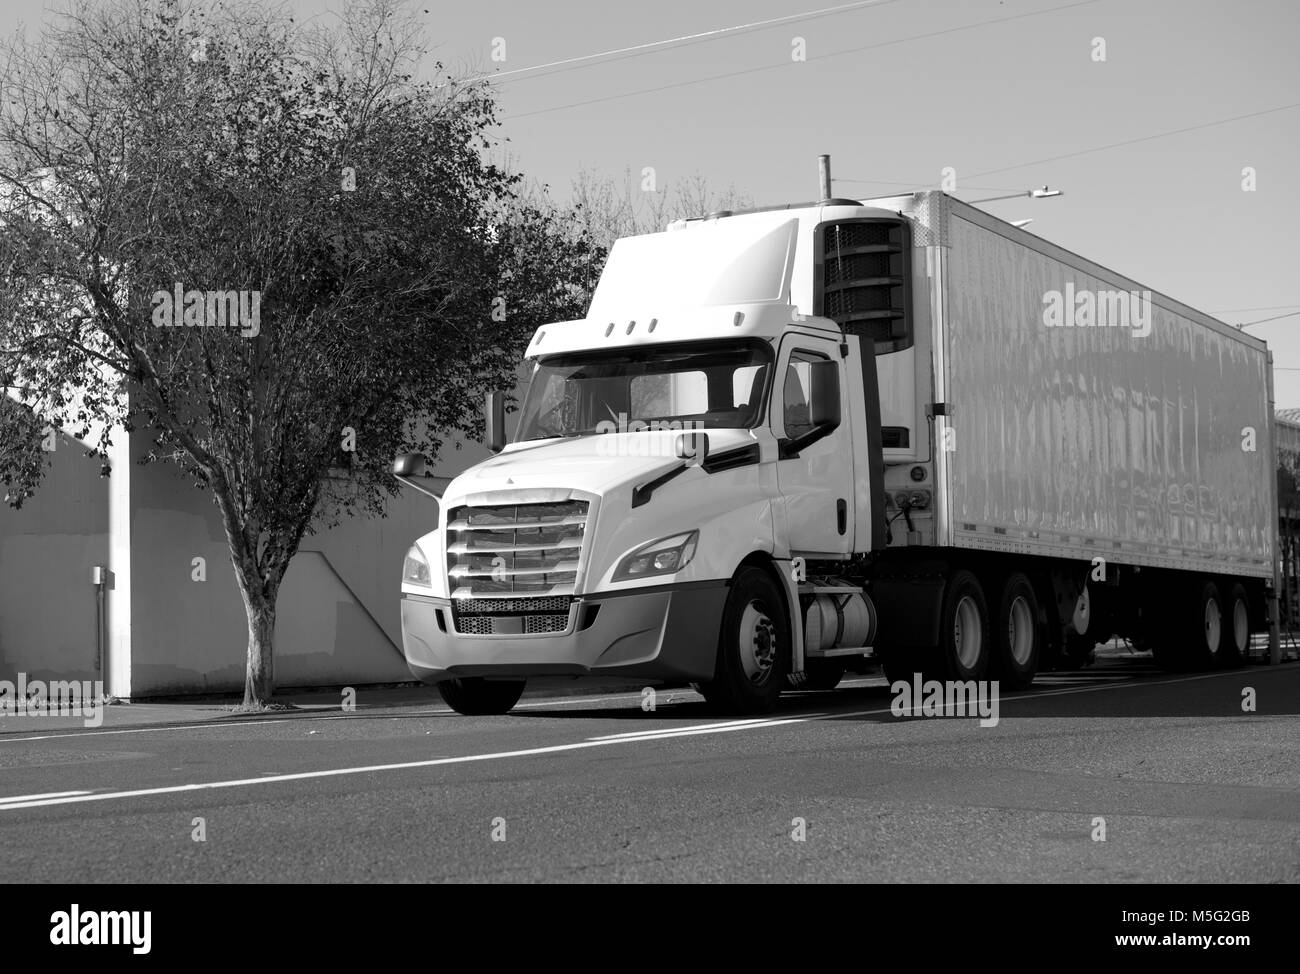 Modern Day Cab Big Rig Semi Truck für kurze lokale Lieferungen mit Kühlschrank Auflieger für den Transport von Gefriergut, die auf der Stadt. Stockfoto